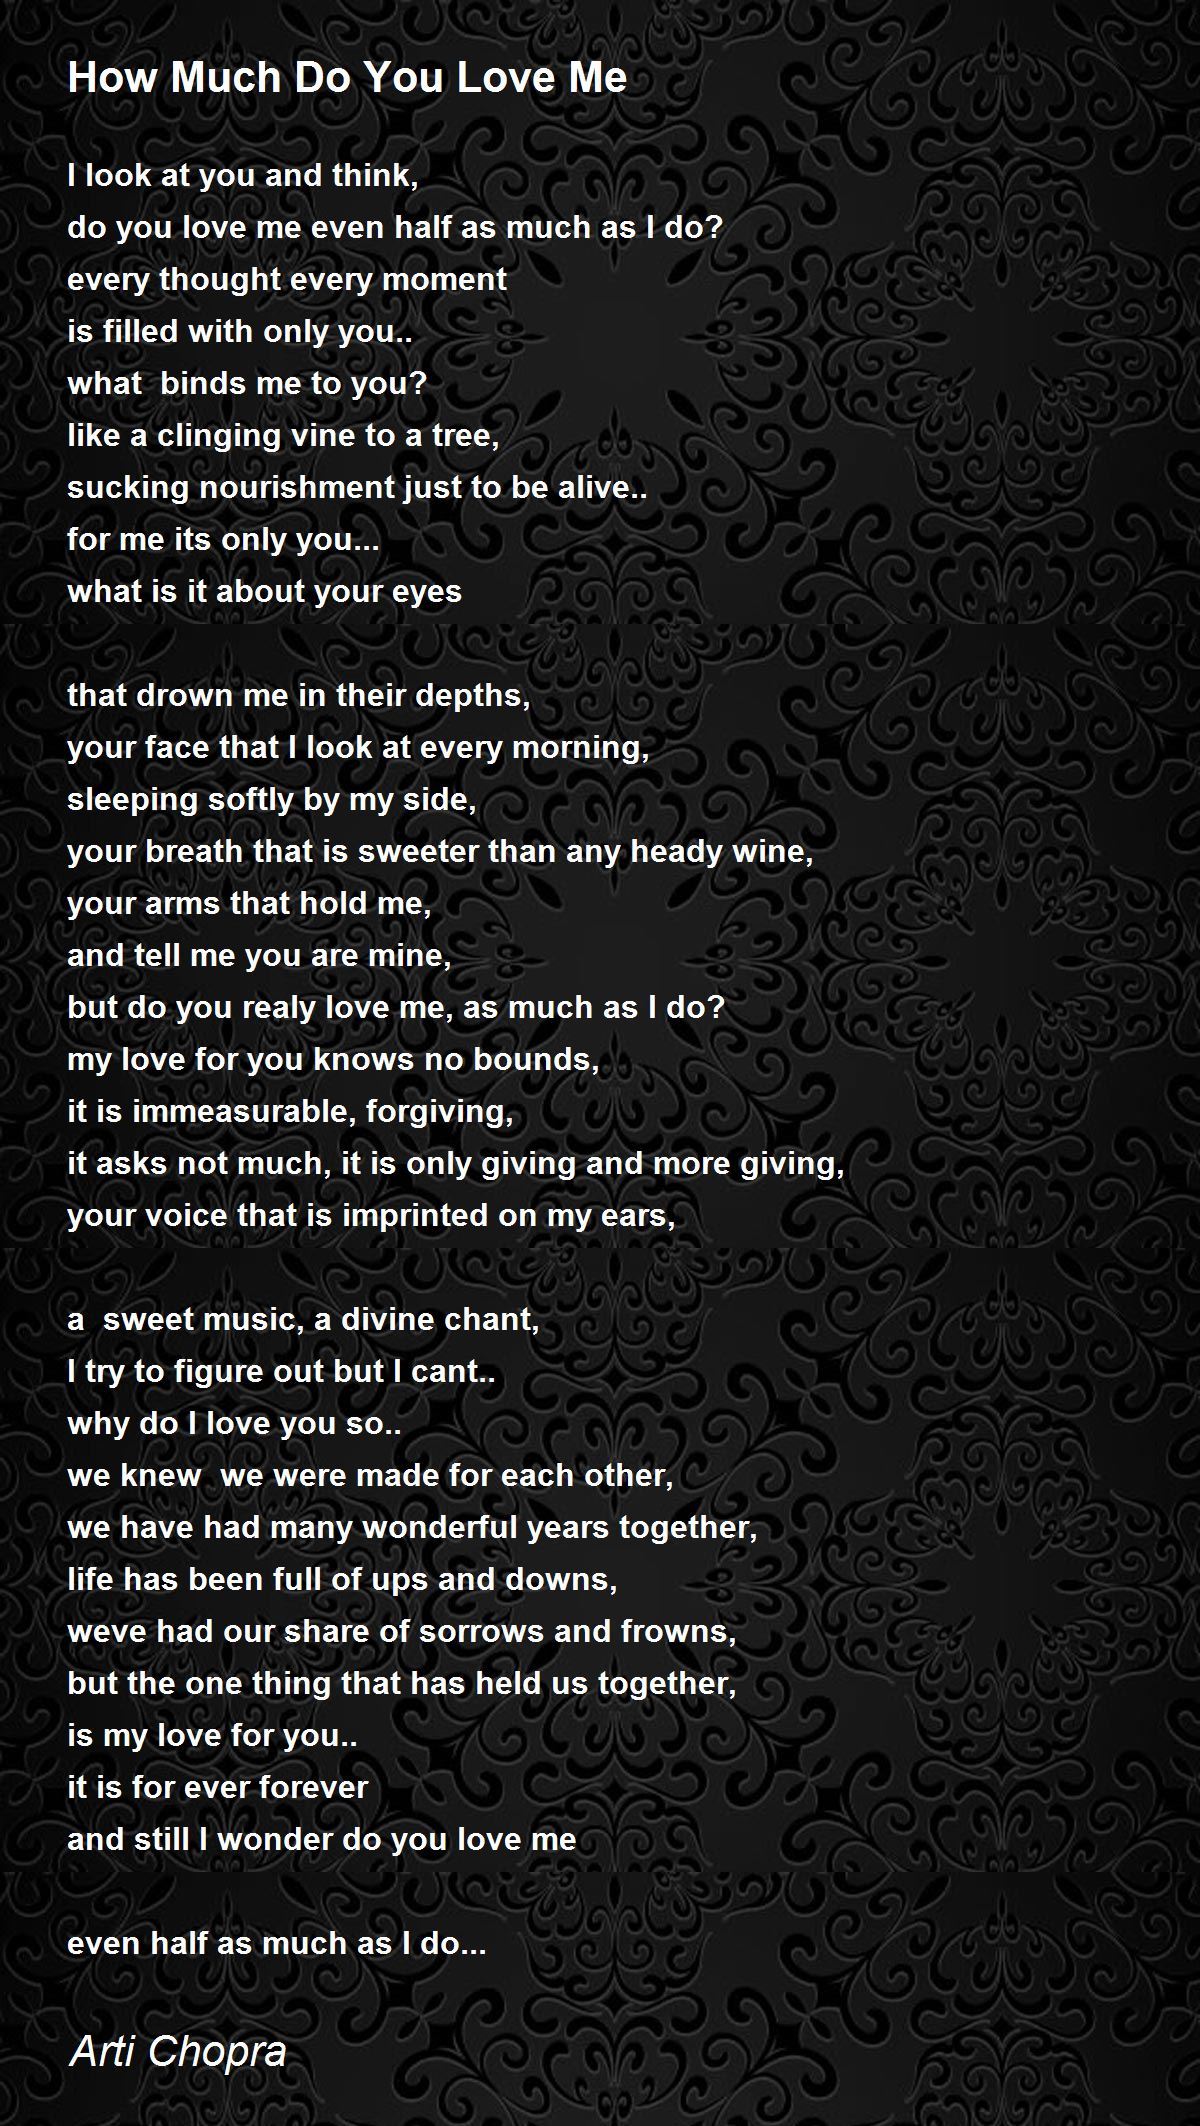 How Much Do You Love Me - How Much Do You Love Me Poem by Arti Chopra